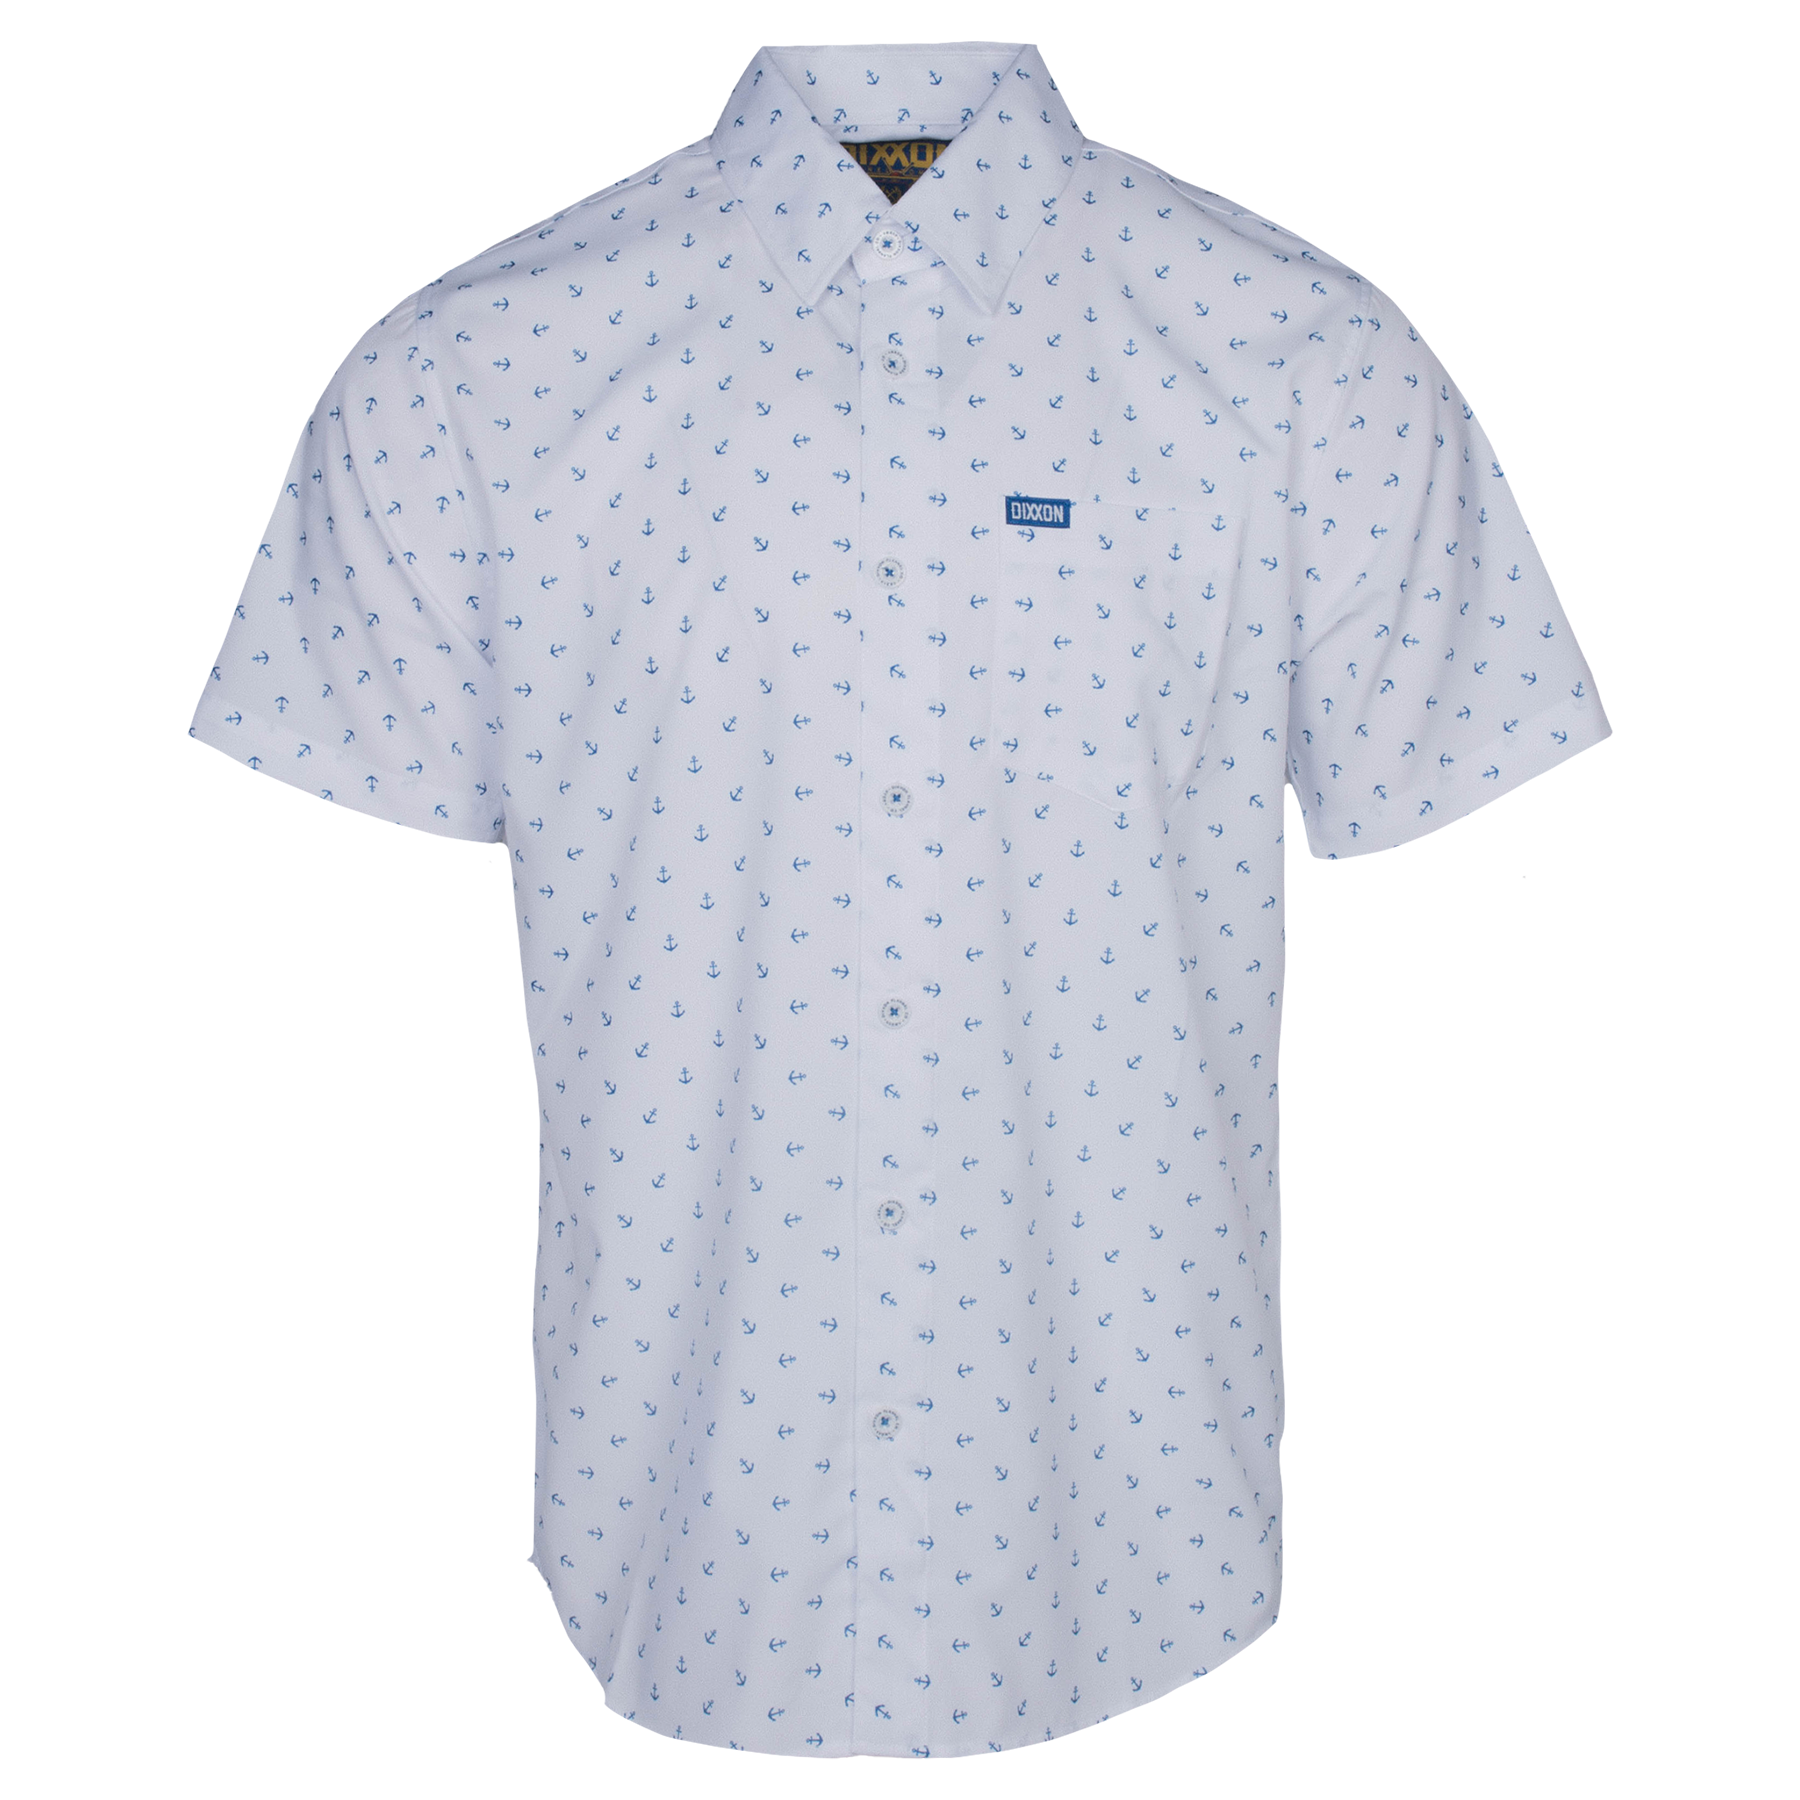 Men's Avery Short Sleeve - White | Dixxon Flannel Co.